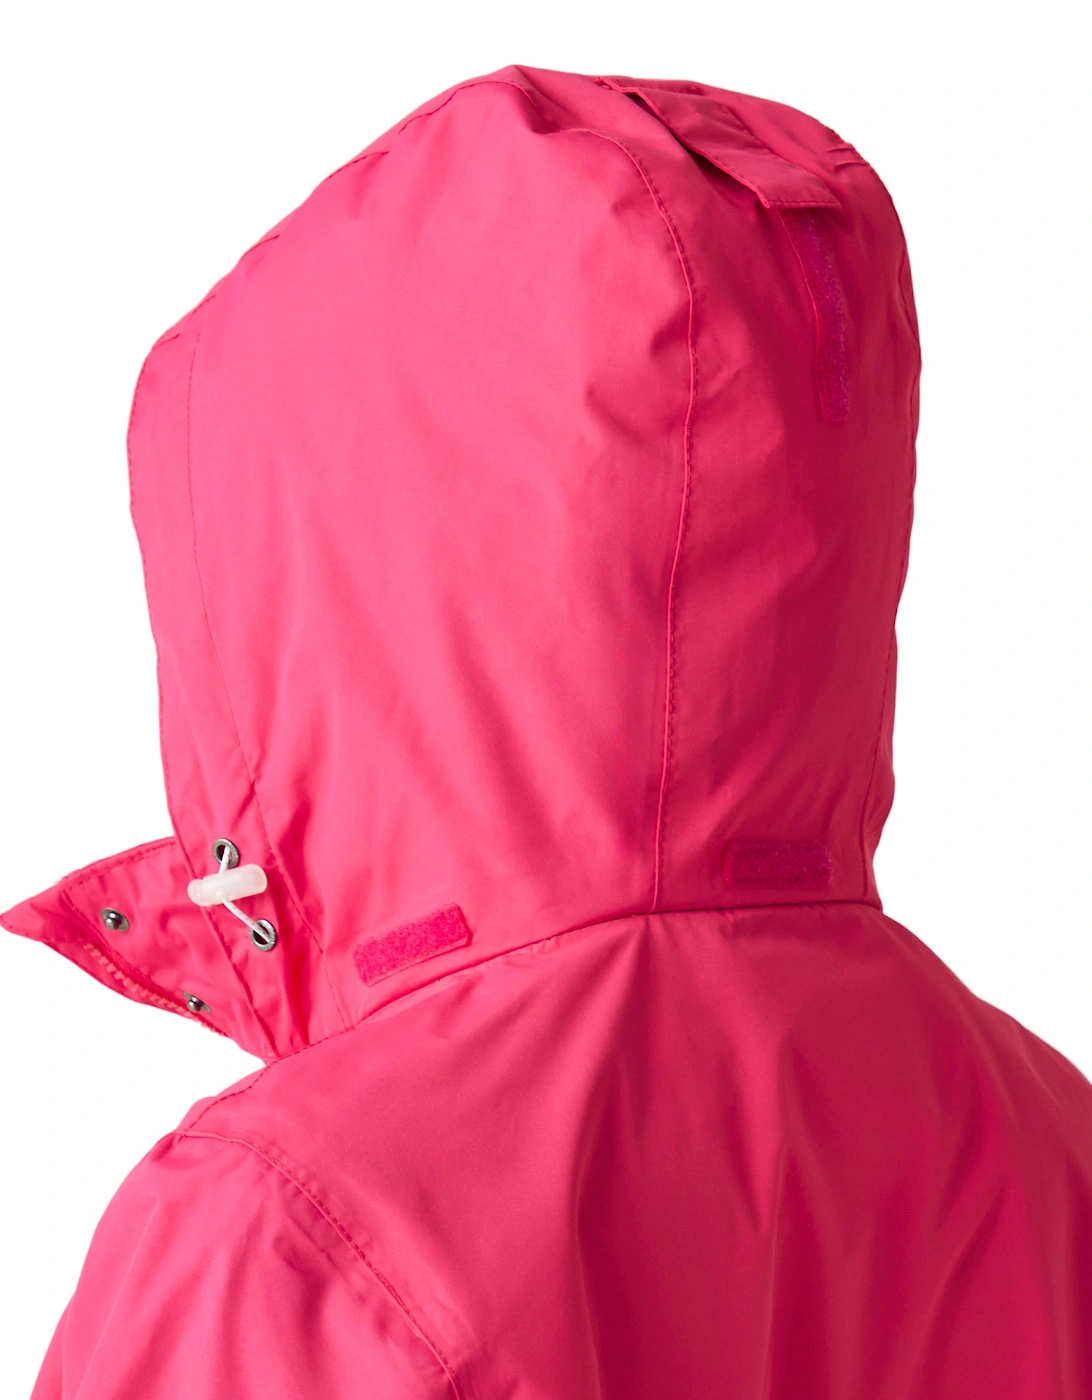 Womens Daysha Waterproof Jacket